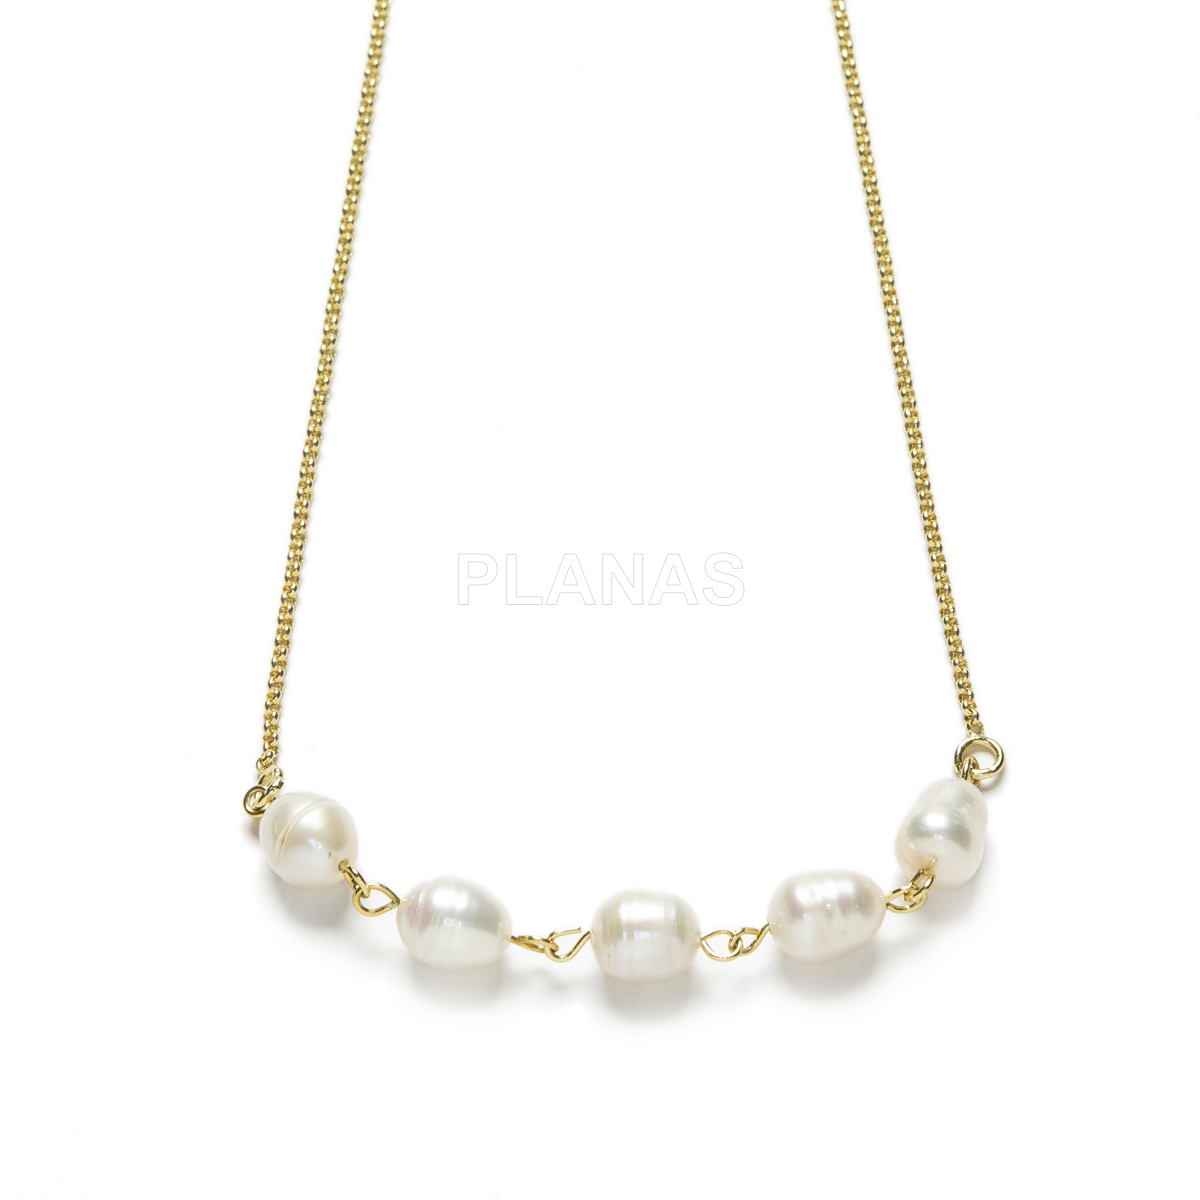 Collar en Plata de Ley y Baño Oro con perlas cultivadas de 6-7mm.